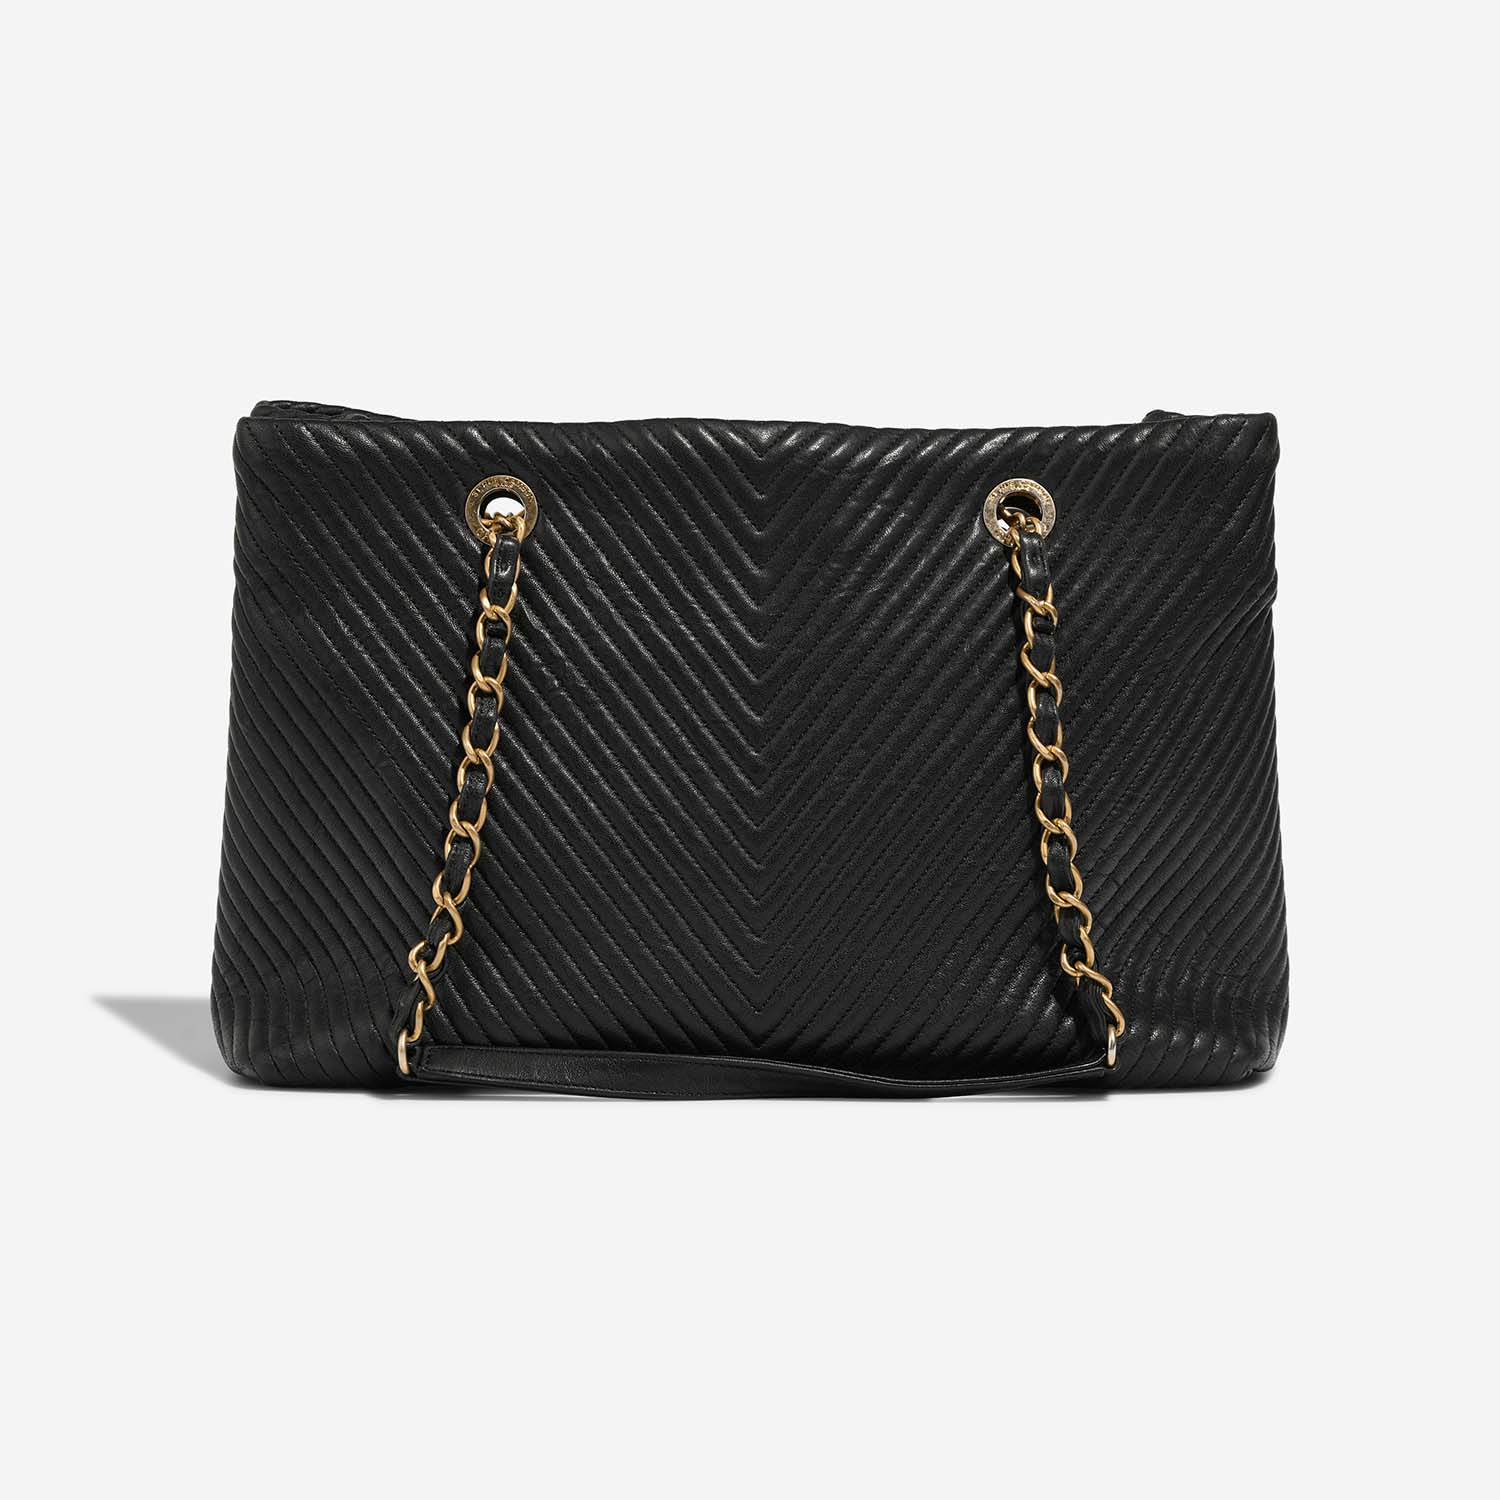 Chanel GST Large Black Back | Verkaufen Sie Ihre Designer-Tasche auf Saclab.com